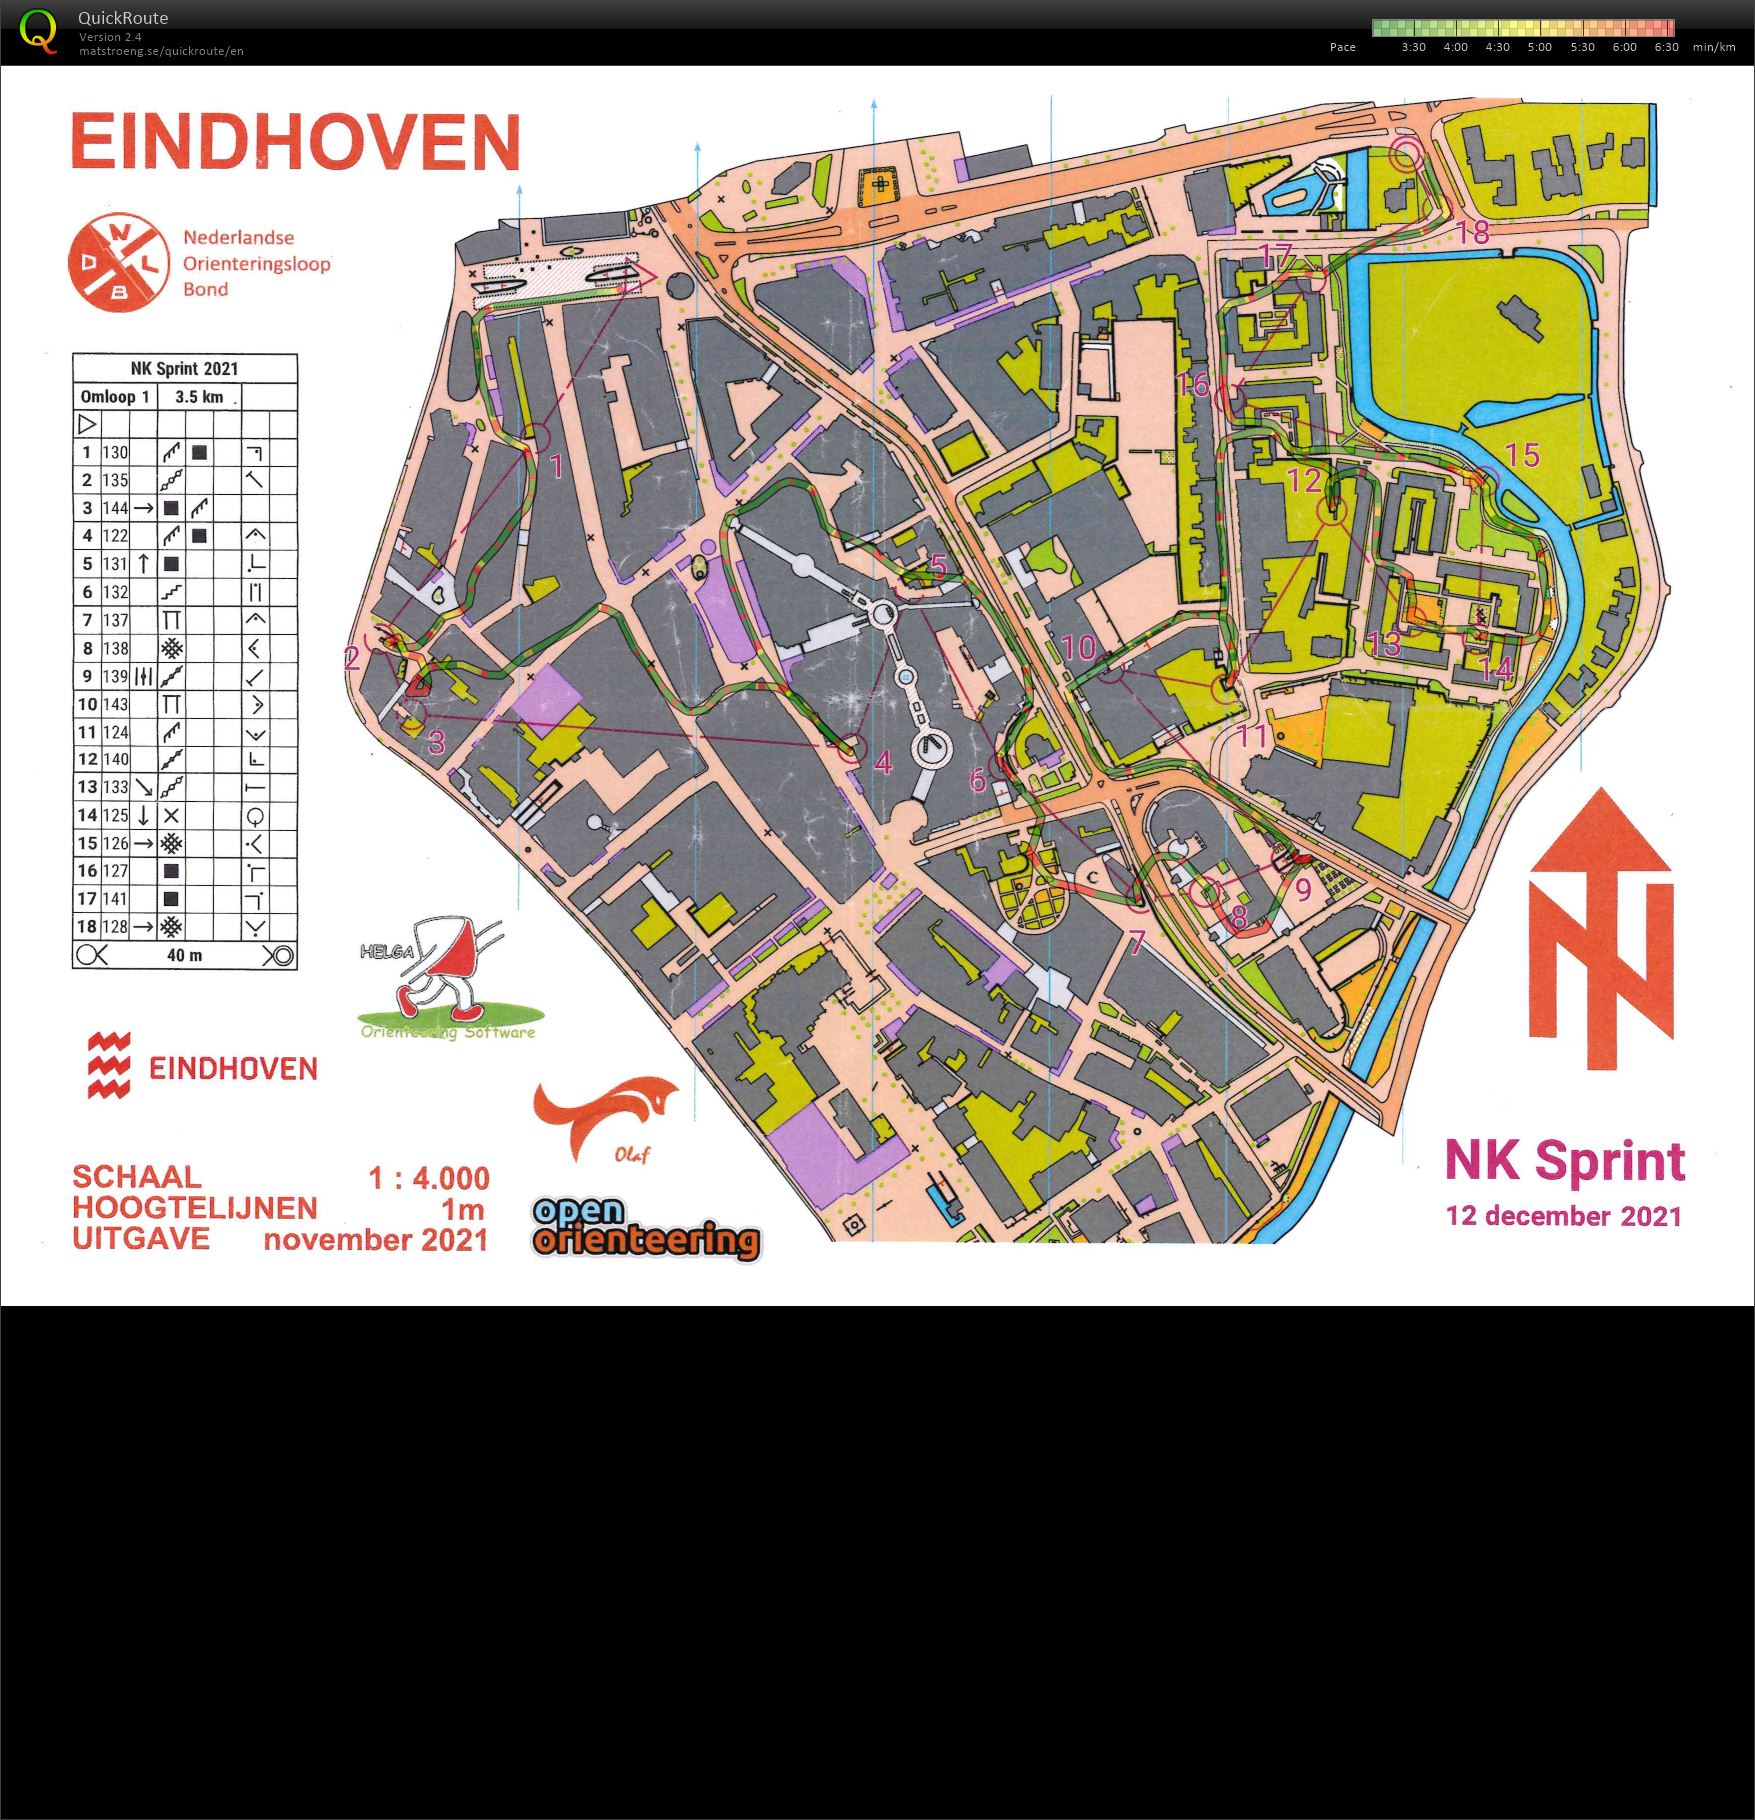 NK Sprint Eindhoven (2021-12-12)